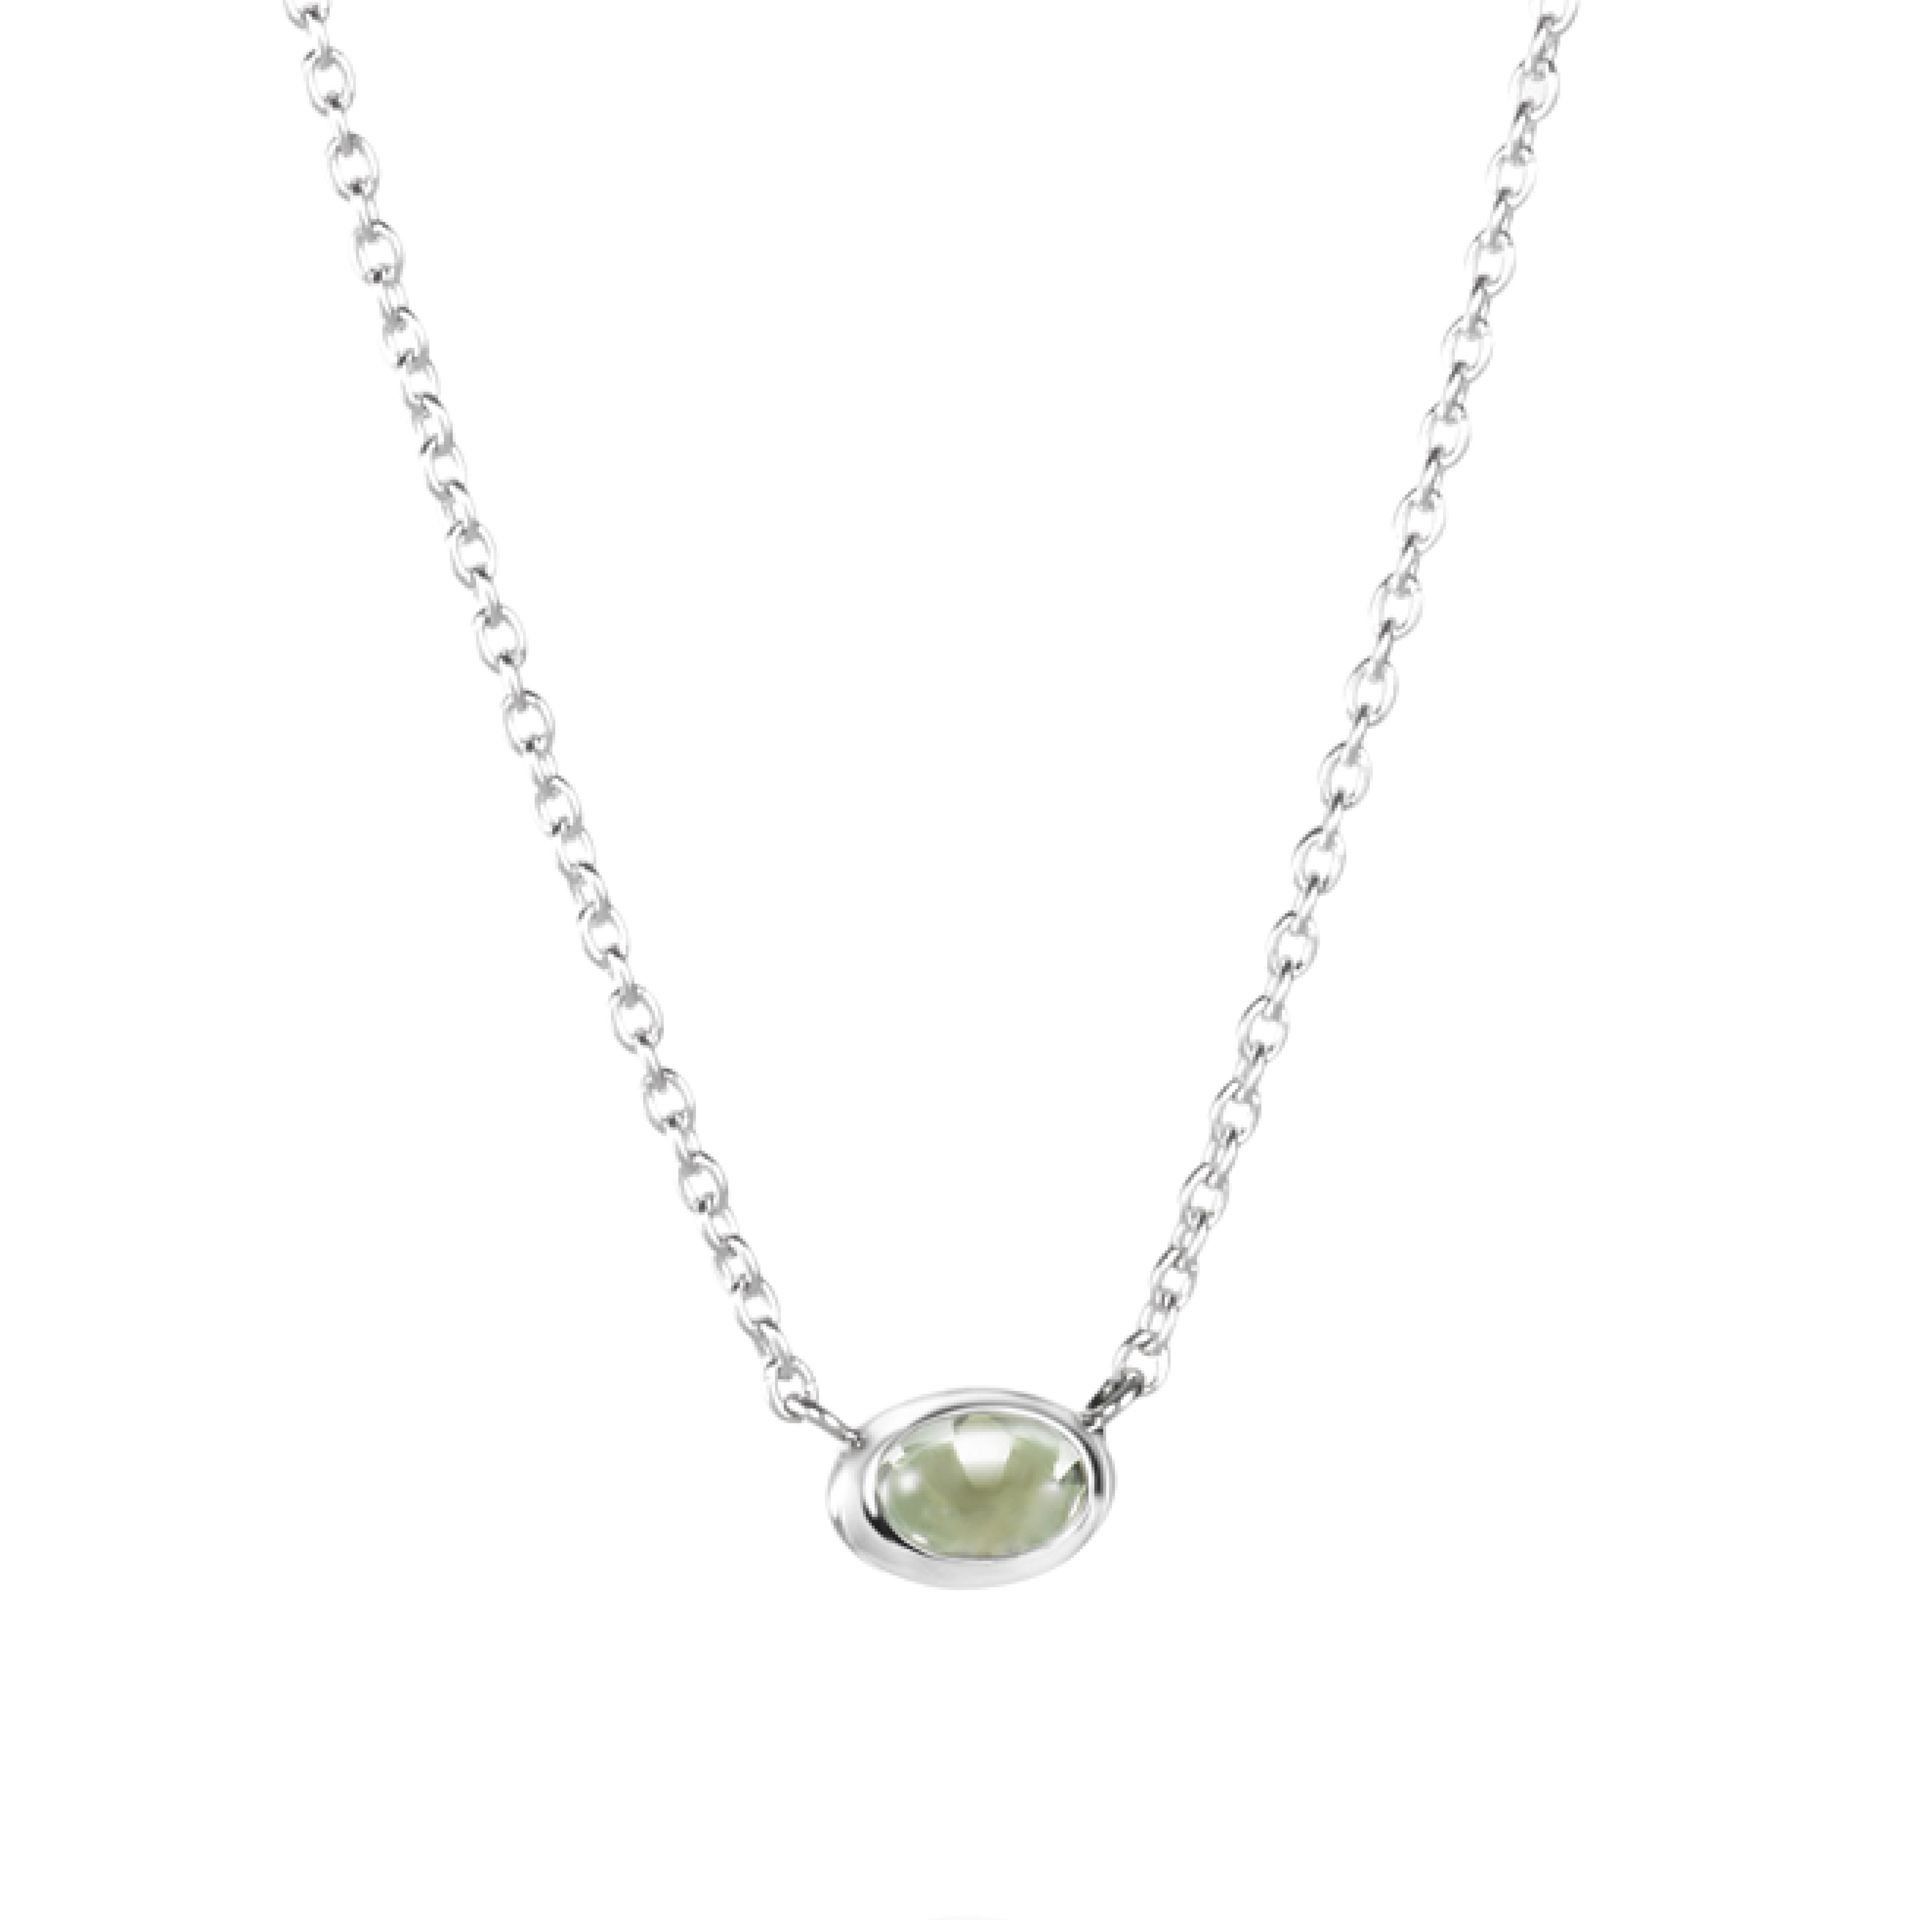 Efva Attling Love Bead Necklace - Green Quartz 42/45 CM - SILVER